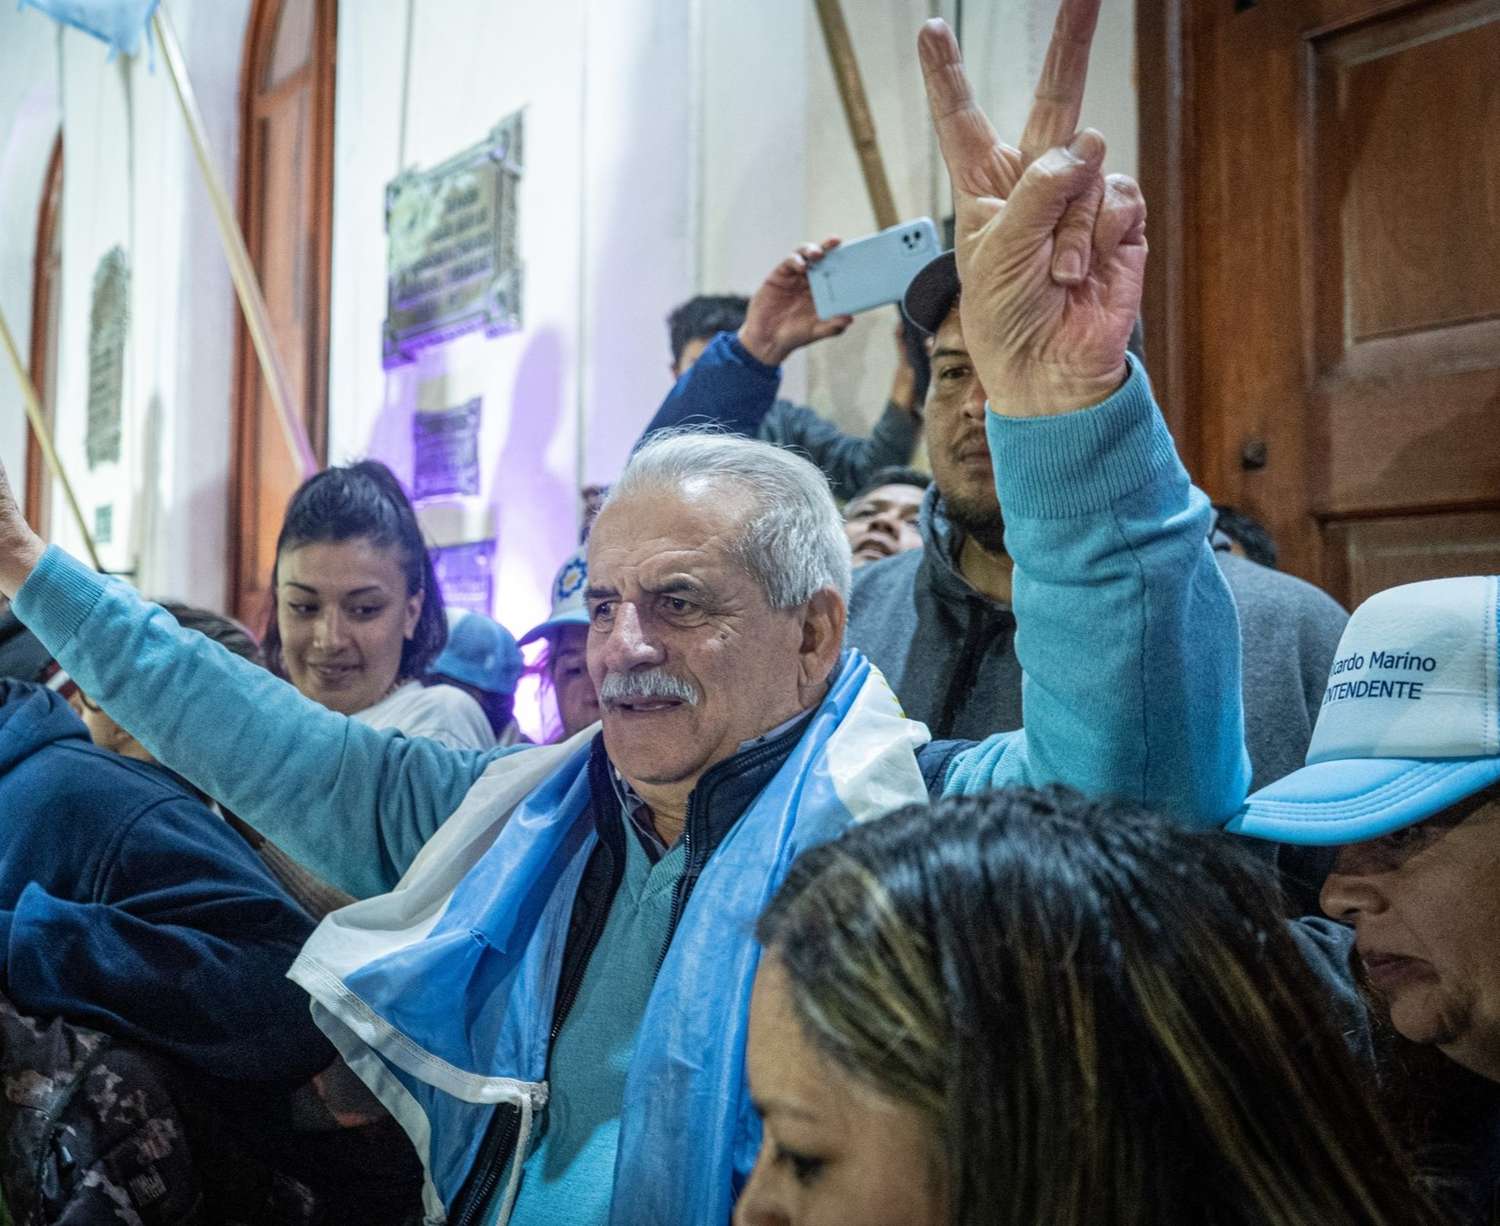 Patagones: Ricardo Marino eliminará la Jefatura de Gabinete cuando asuma